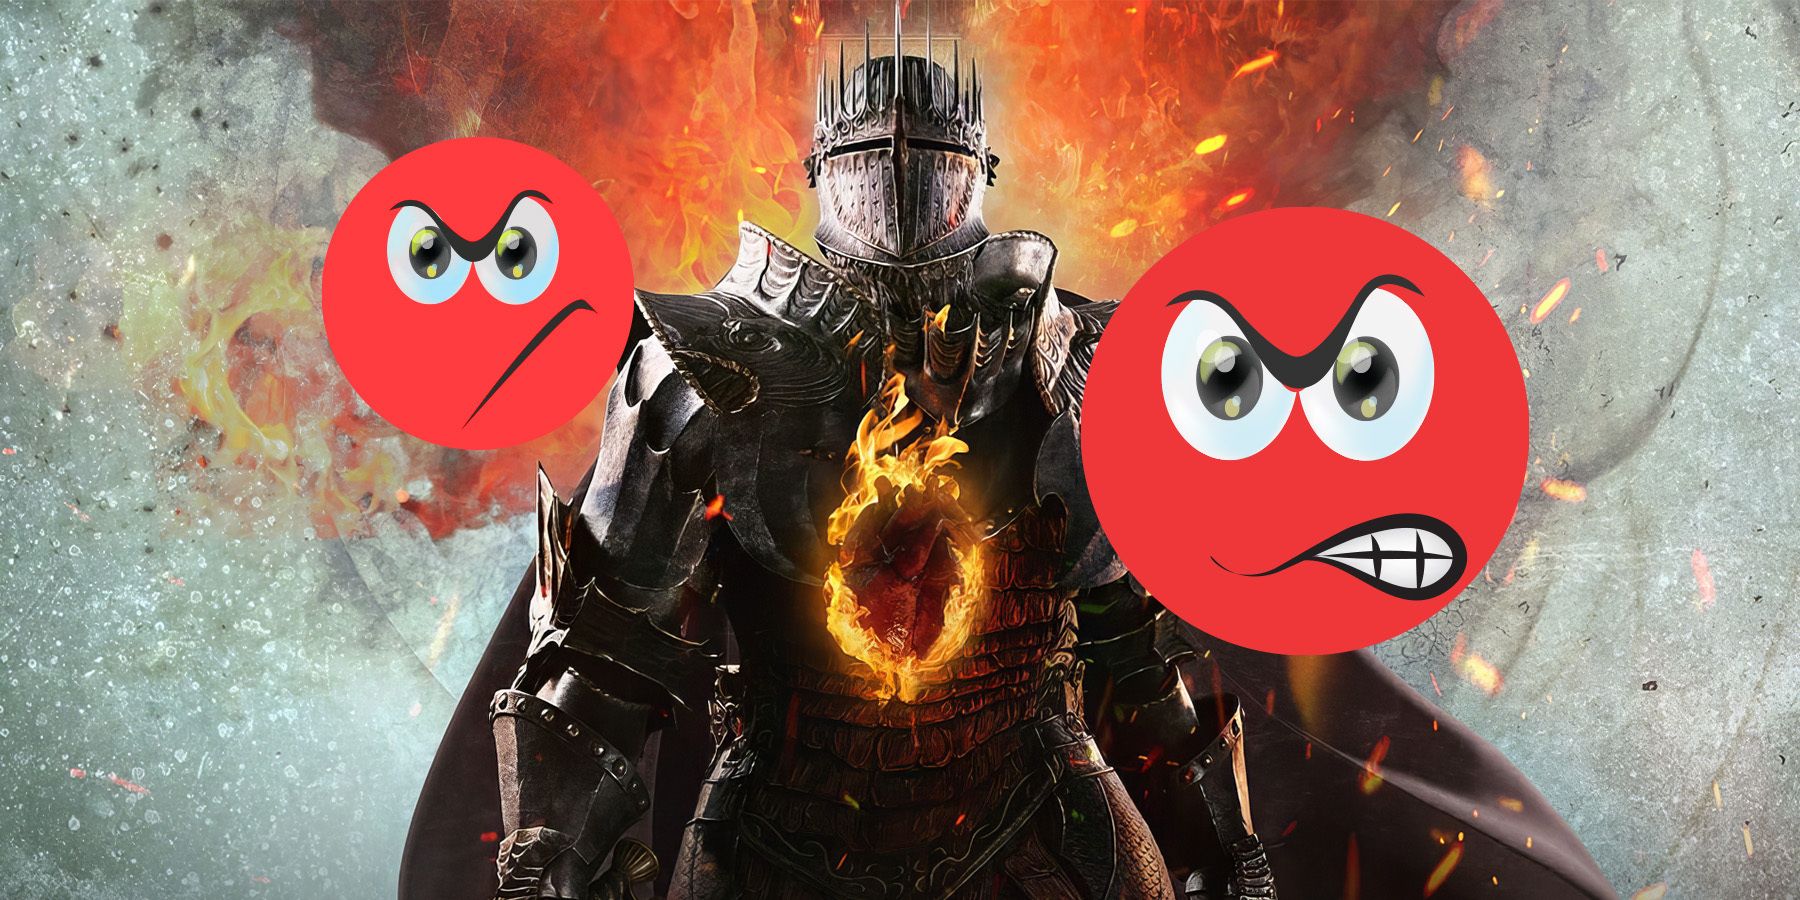 dragons-dogma-2-angry-emojis-game-rant-1